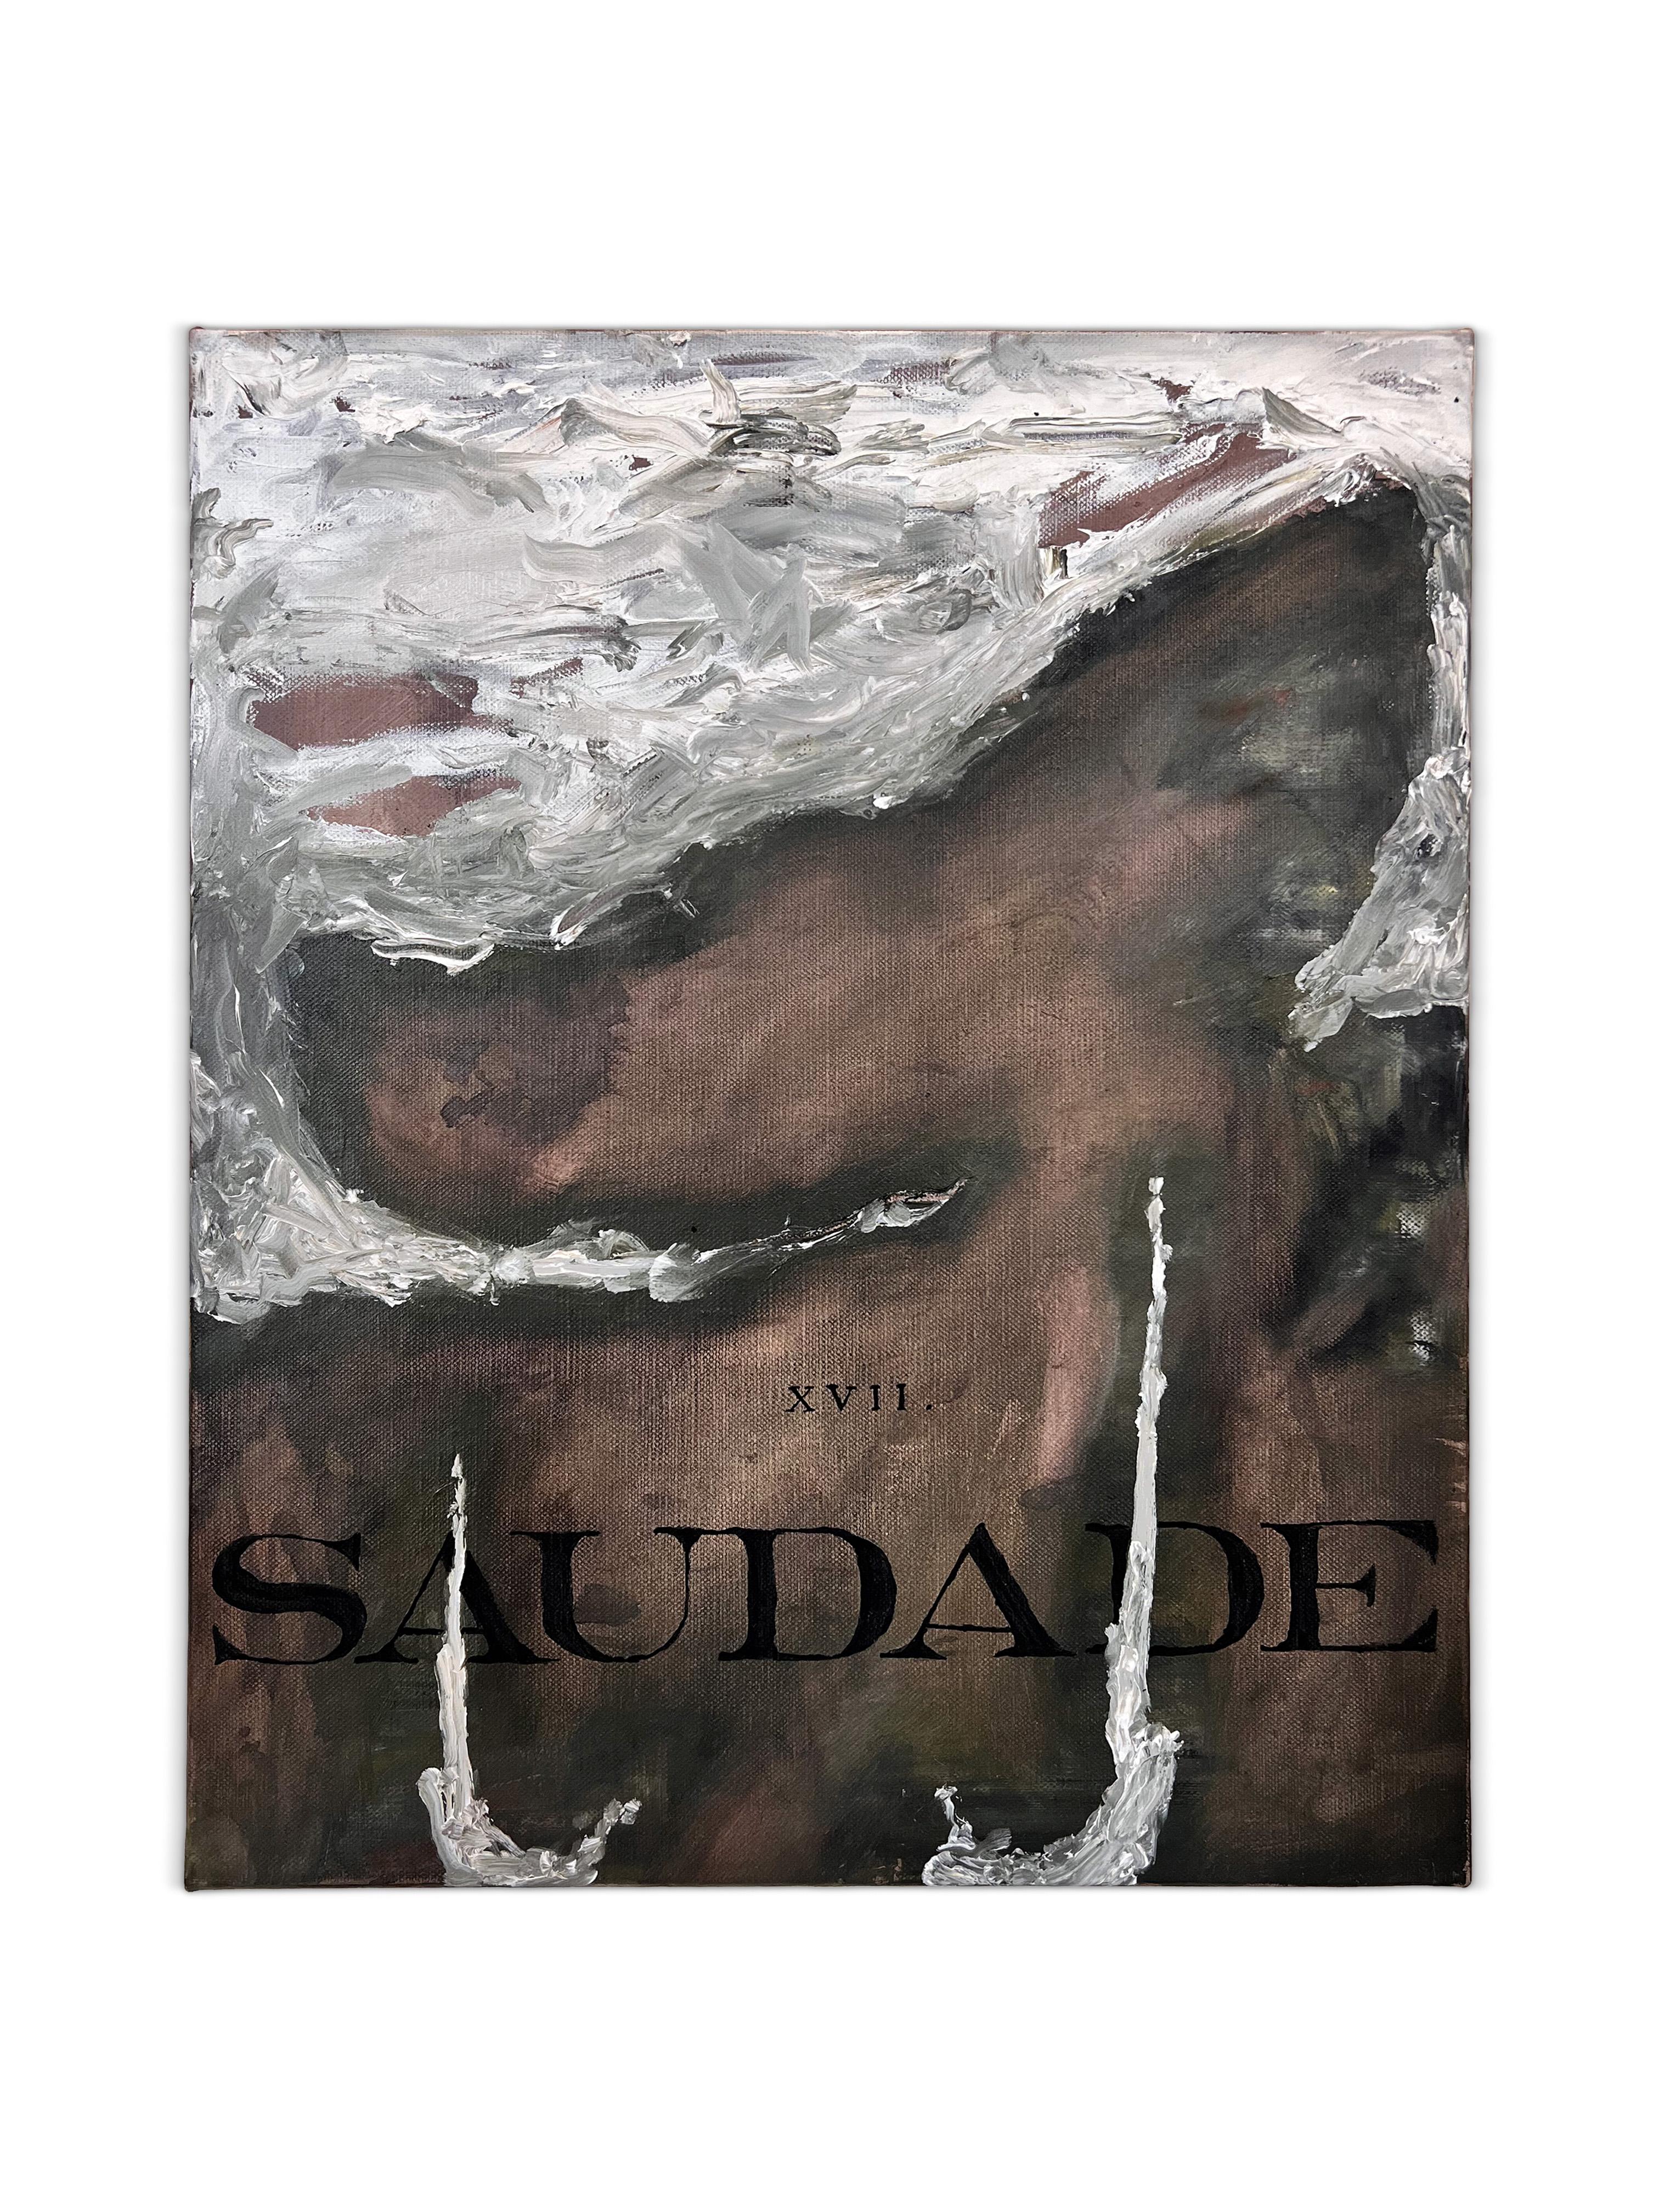 „Saudade“ (schwarz-weiß, reichhaltig, Text, Schrift, abstrakt, surreal, natürlich, neutral) – Painting von Nicholas Evans